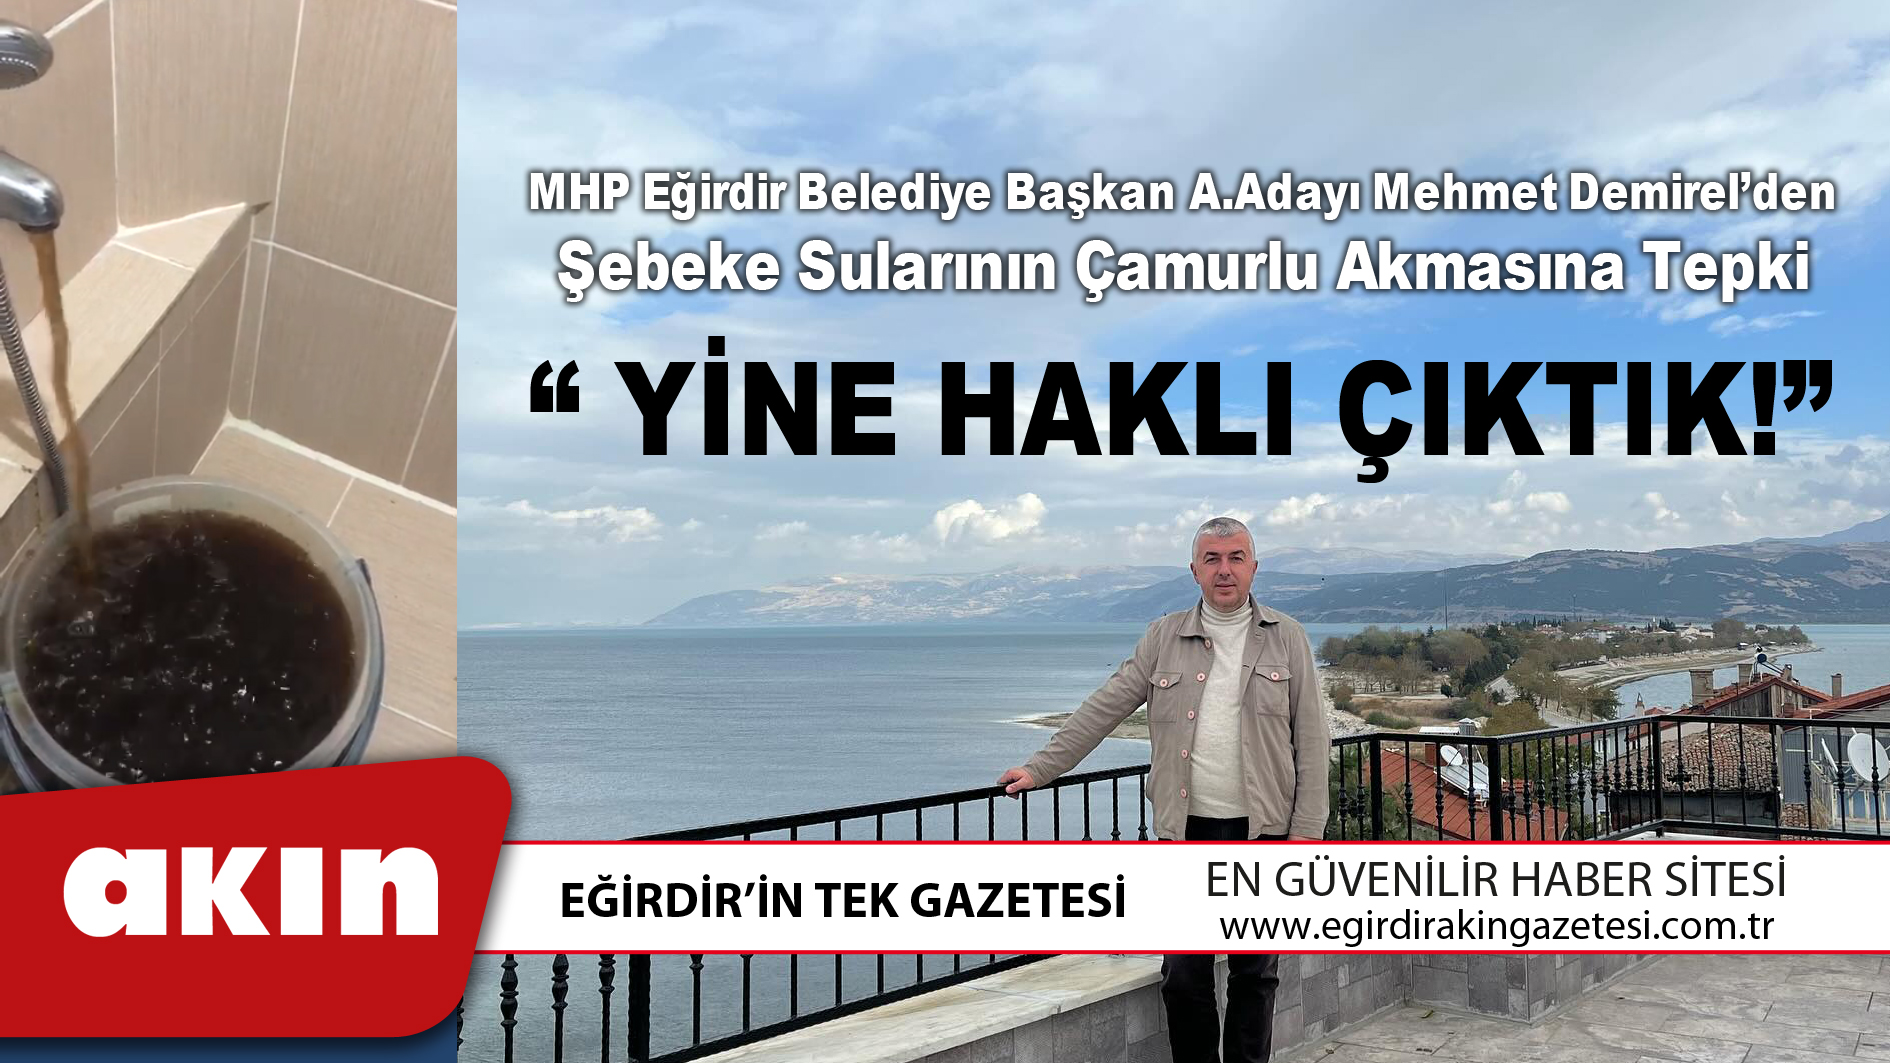 eğirdir haber,akın gazetesi,egirdir haberler,son dakika,MHP Eğirdir Belediye Başkan A.Adayı Mehmet Demirel’den Şebeke Sularının Çamurlu Akmasına Tepki